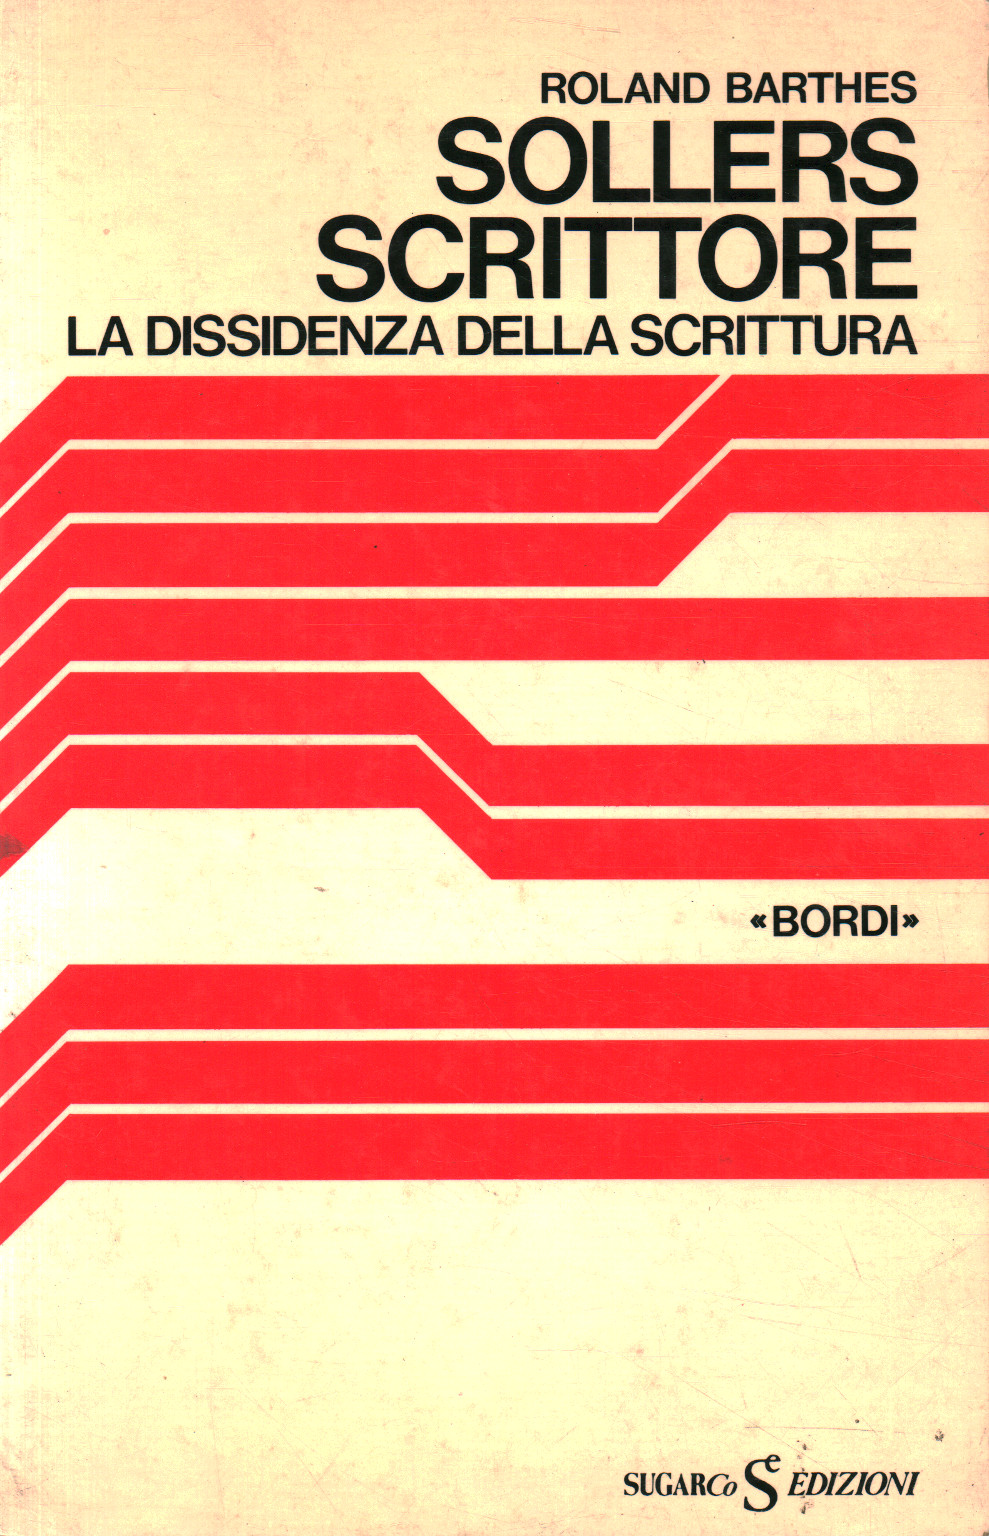 Sollers scrittore. La dissidenza della scrittura., Roland Barthes